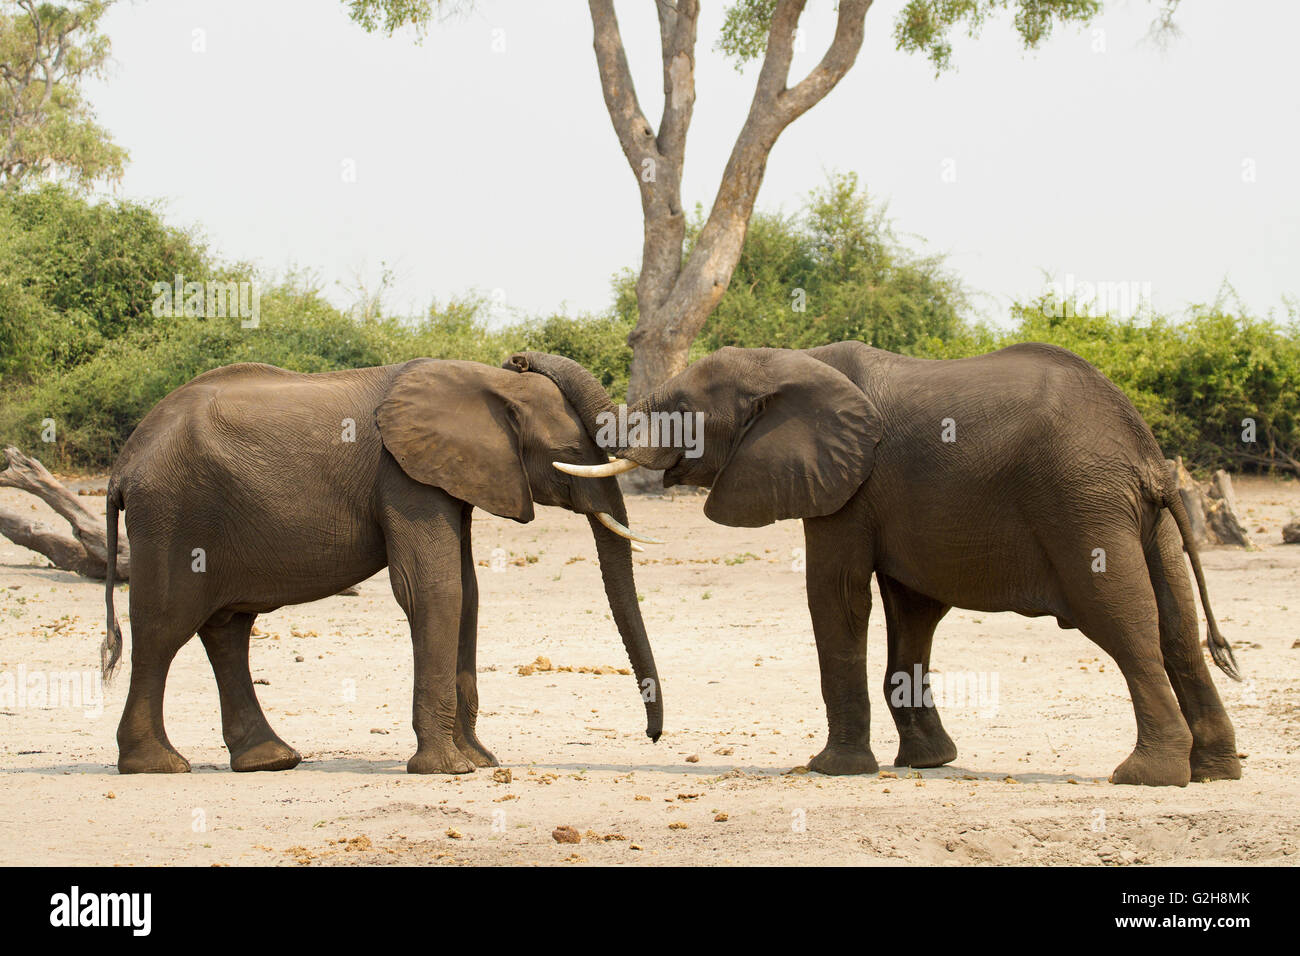 Les éléphants africains pour mineurs de jouer et montrer de l'affection avec leurs malles, dans le Parc National de Chobe, Botswana, Africa Banque D'Images